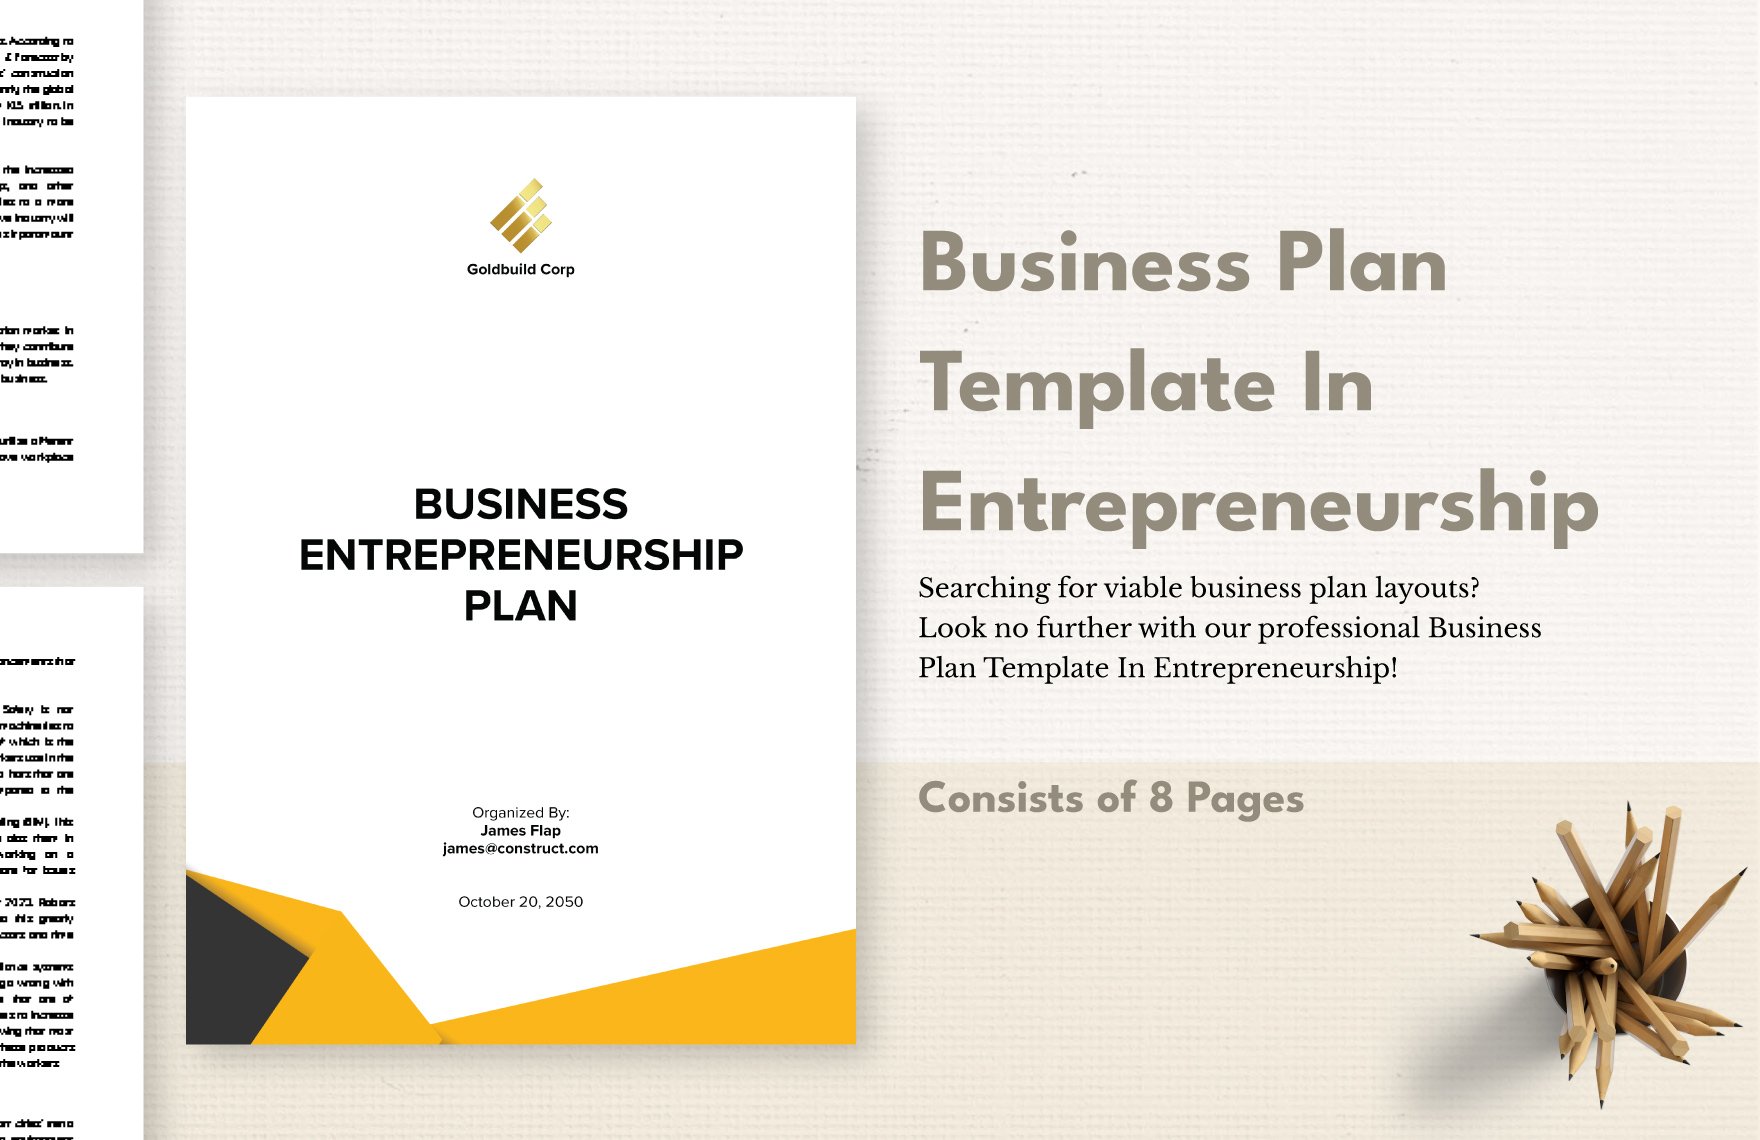 Business Plan Template In Entrepreneurship